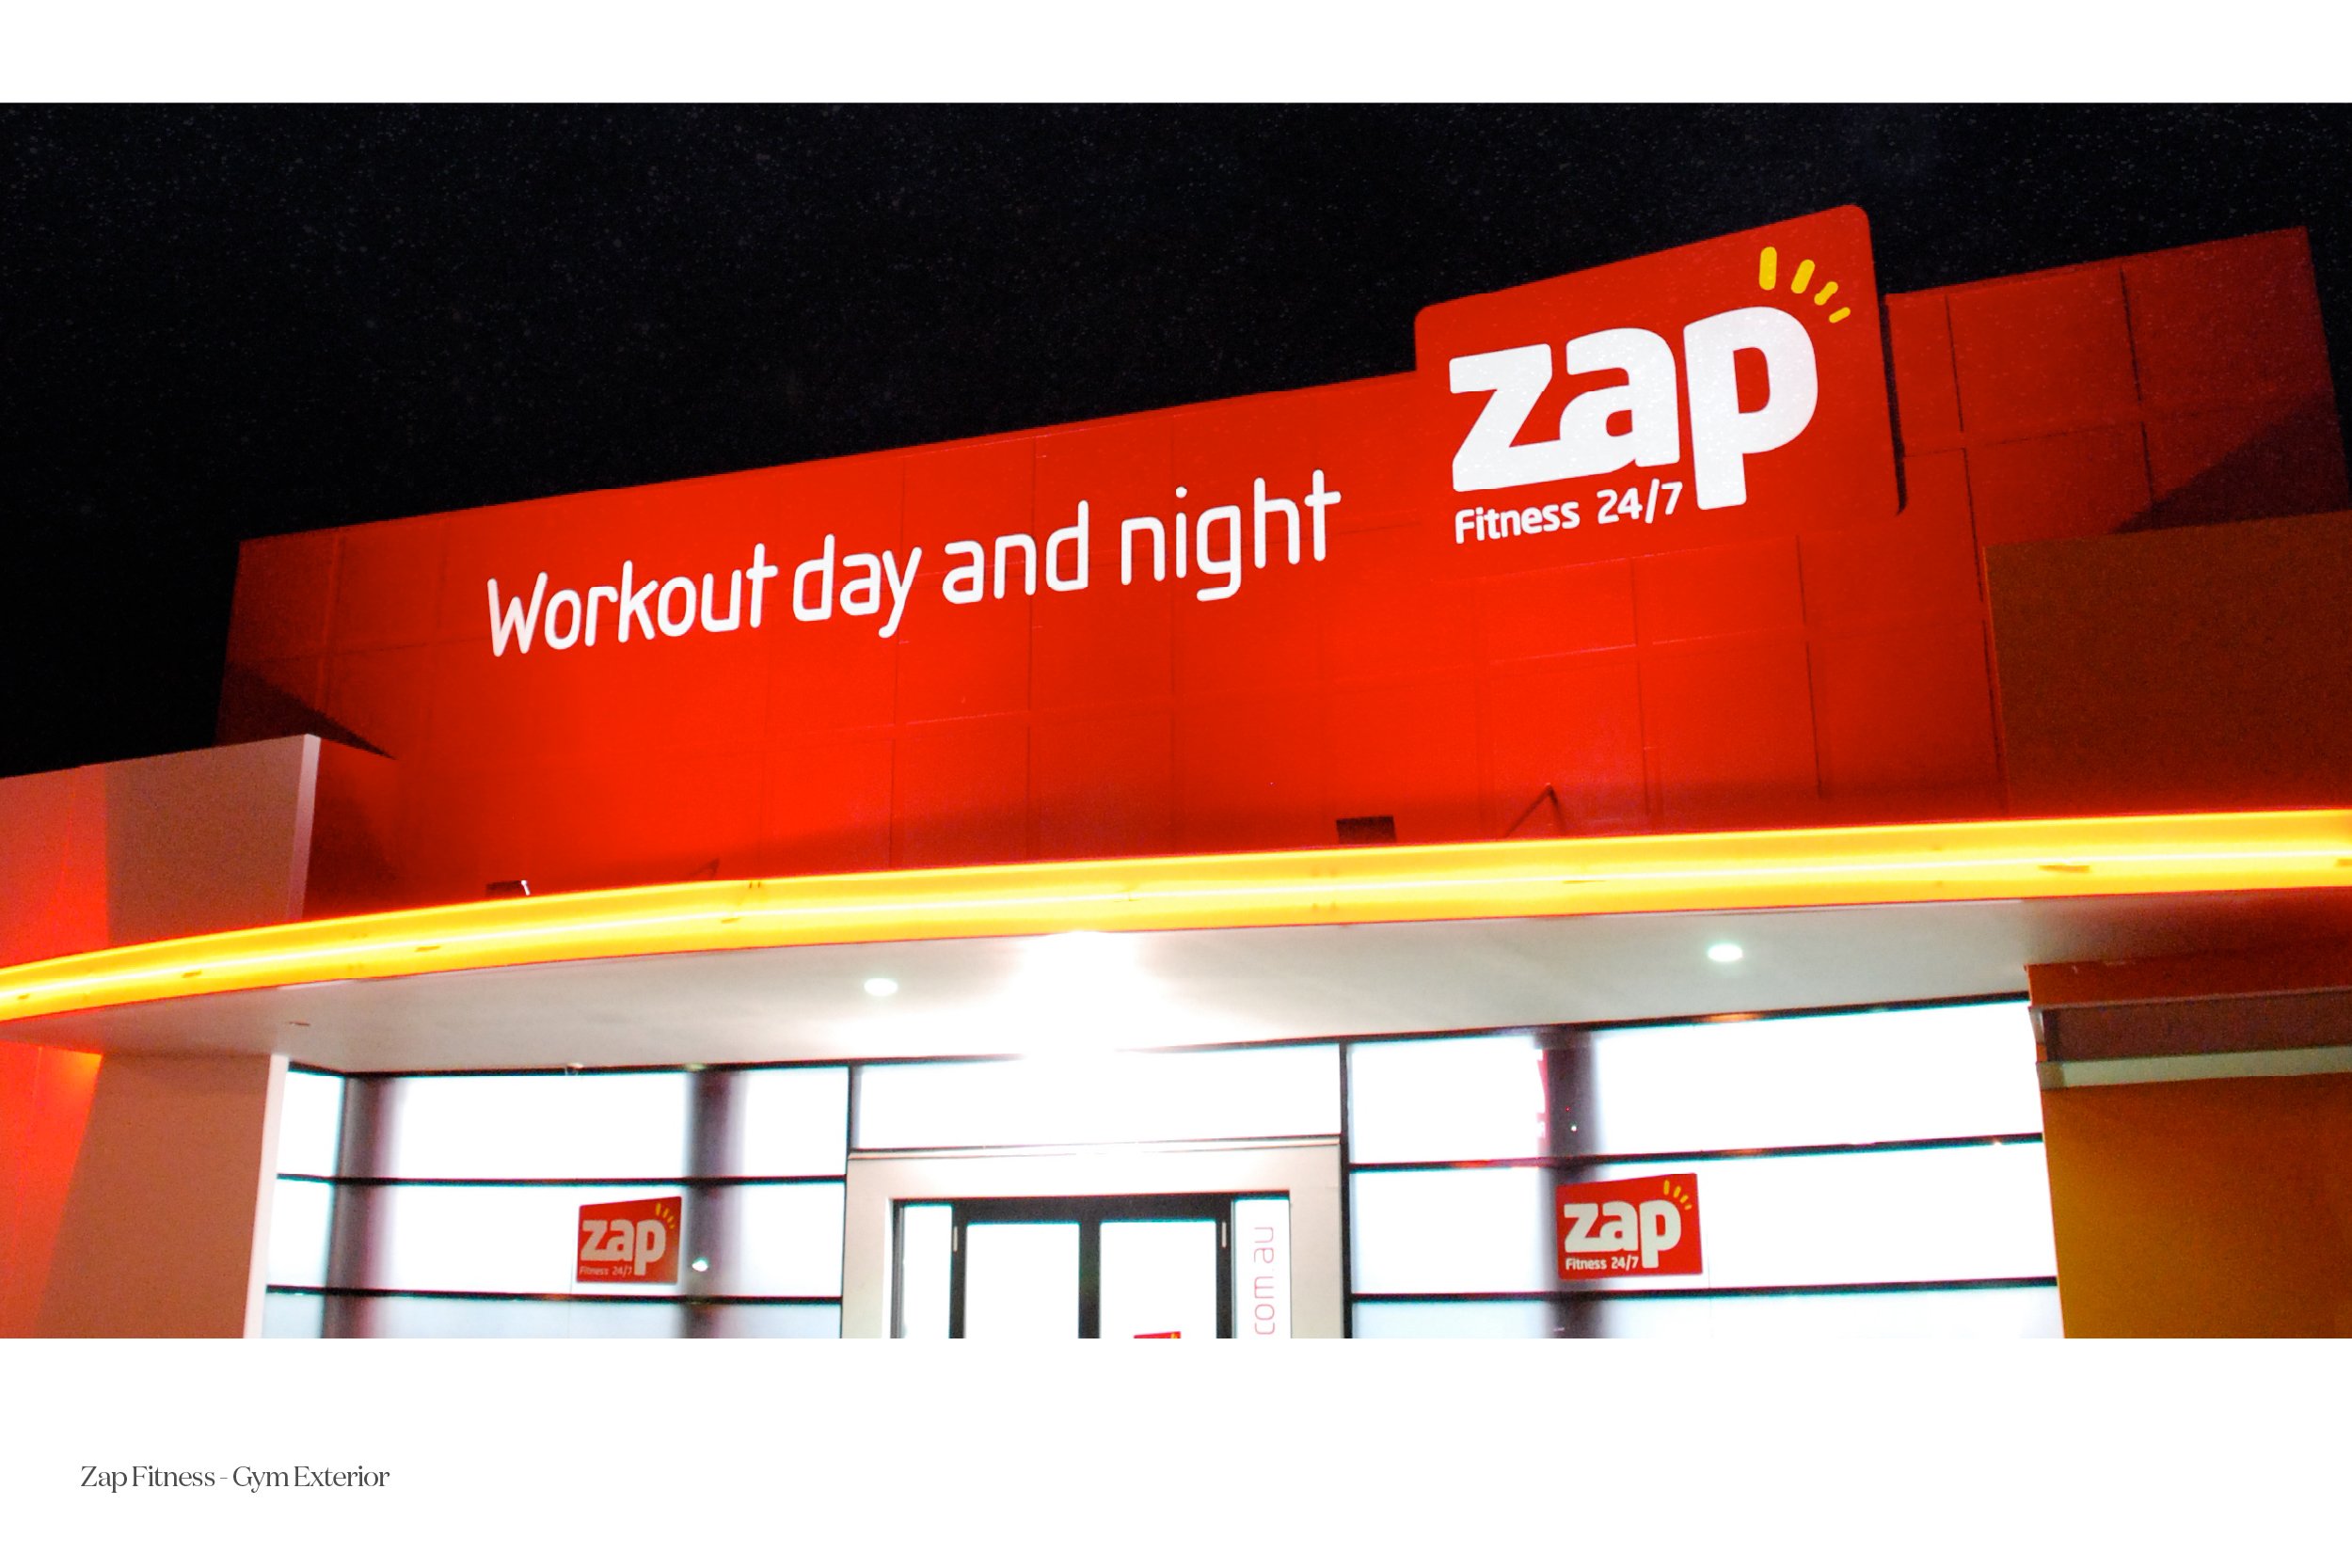 Zap Fitness 24/7